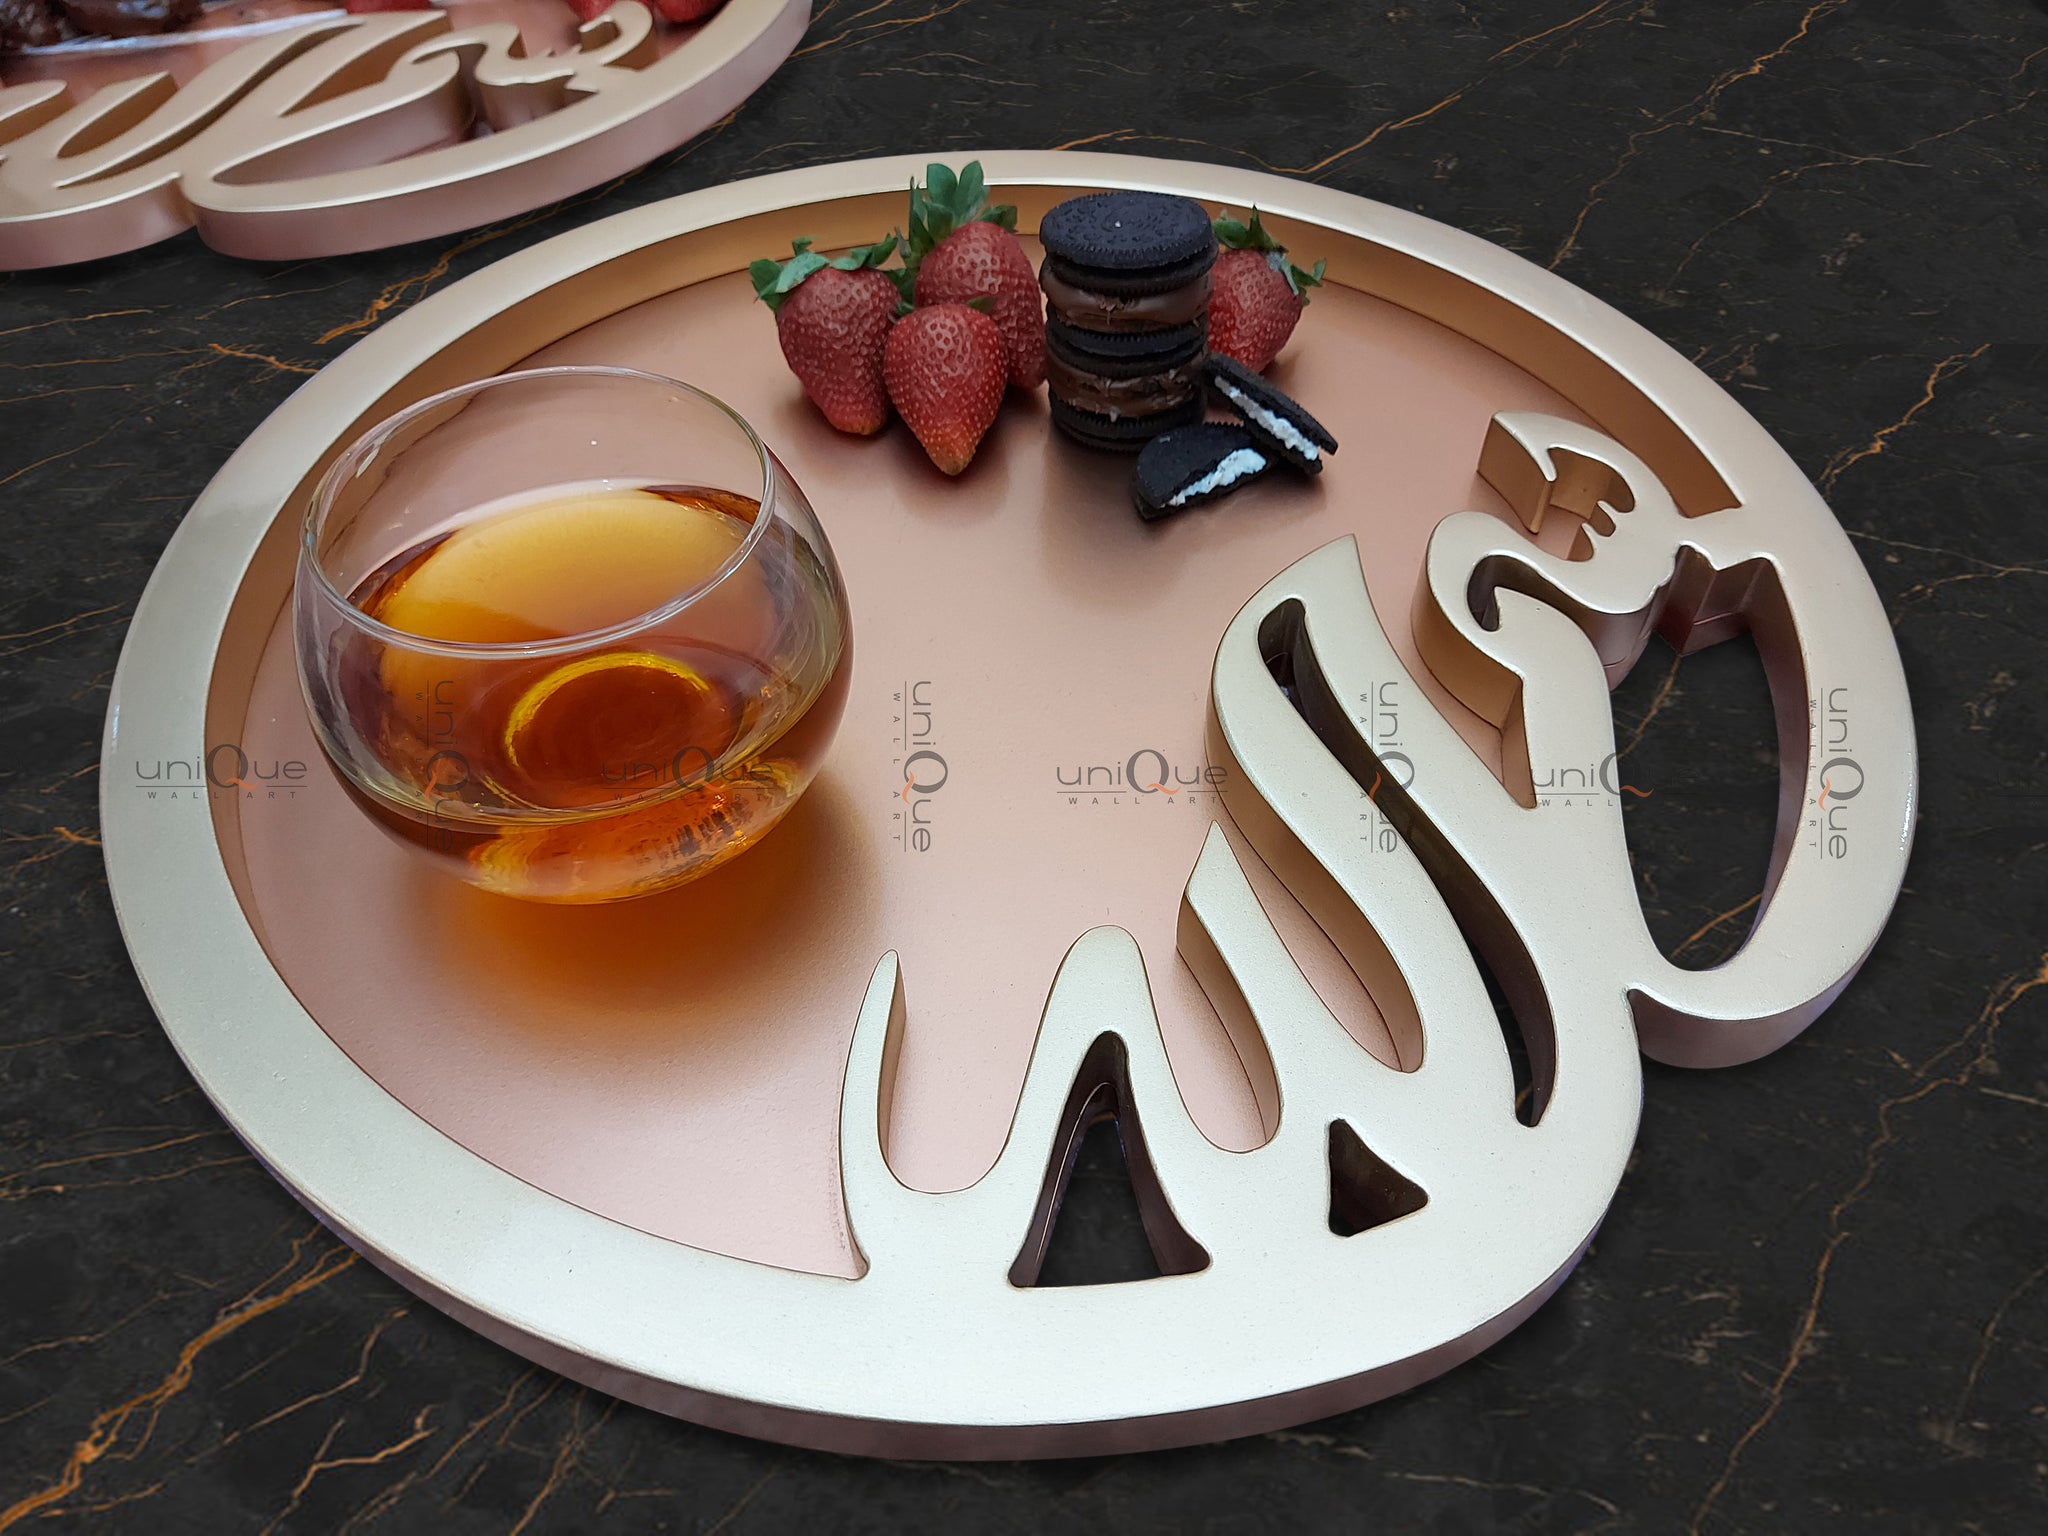 Islamic Bismillah Wood Serving Ramadan Tray Platter